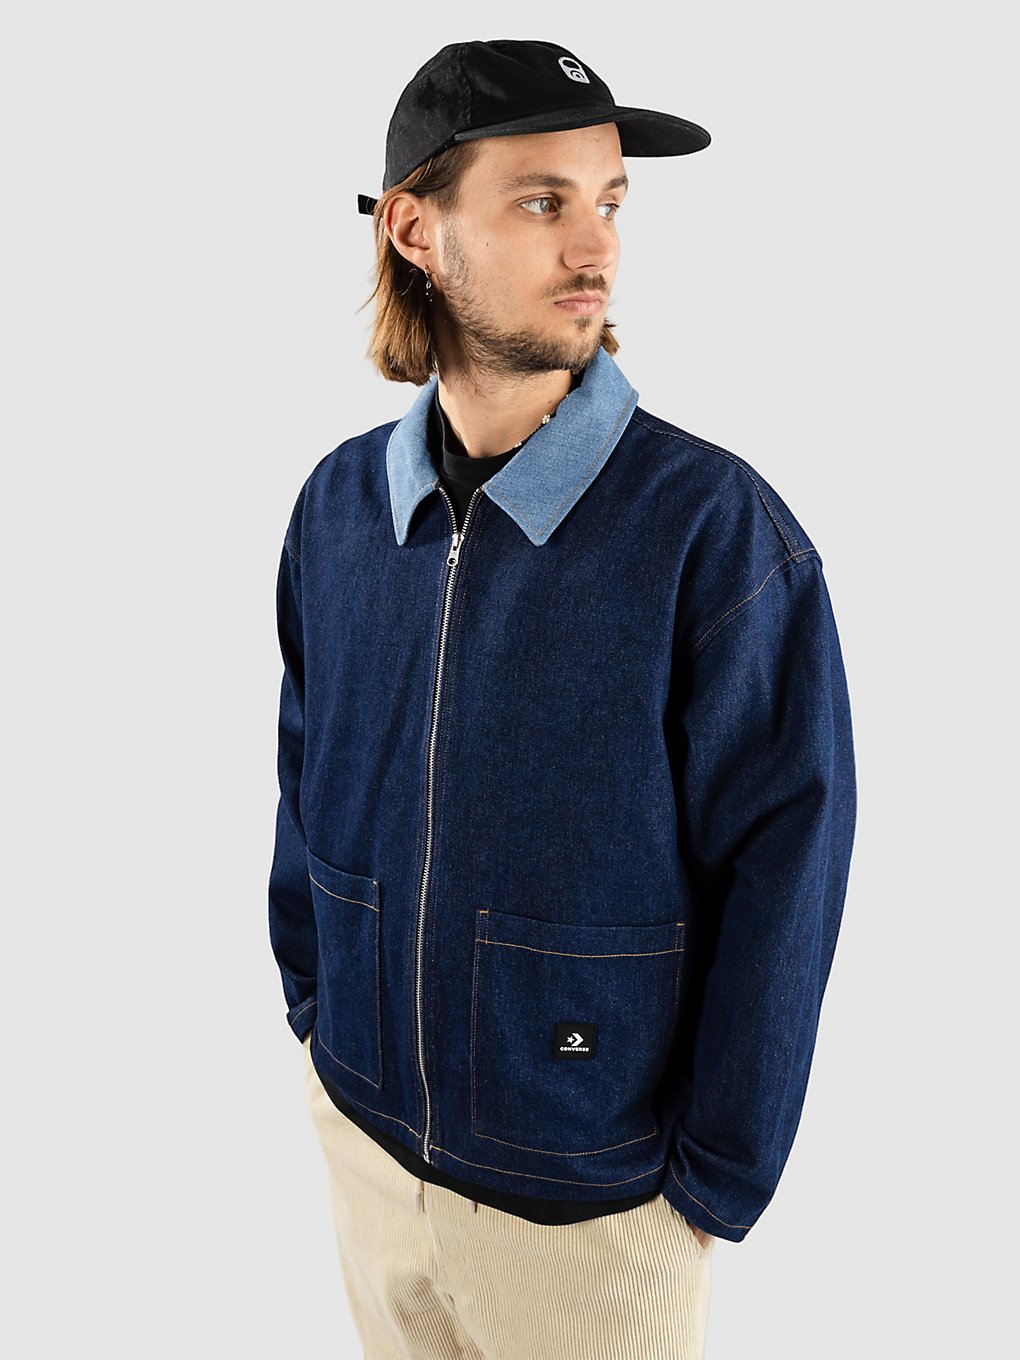 Converse Woven Shirt Denim Jacket night indigo kaufen